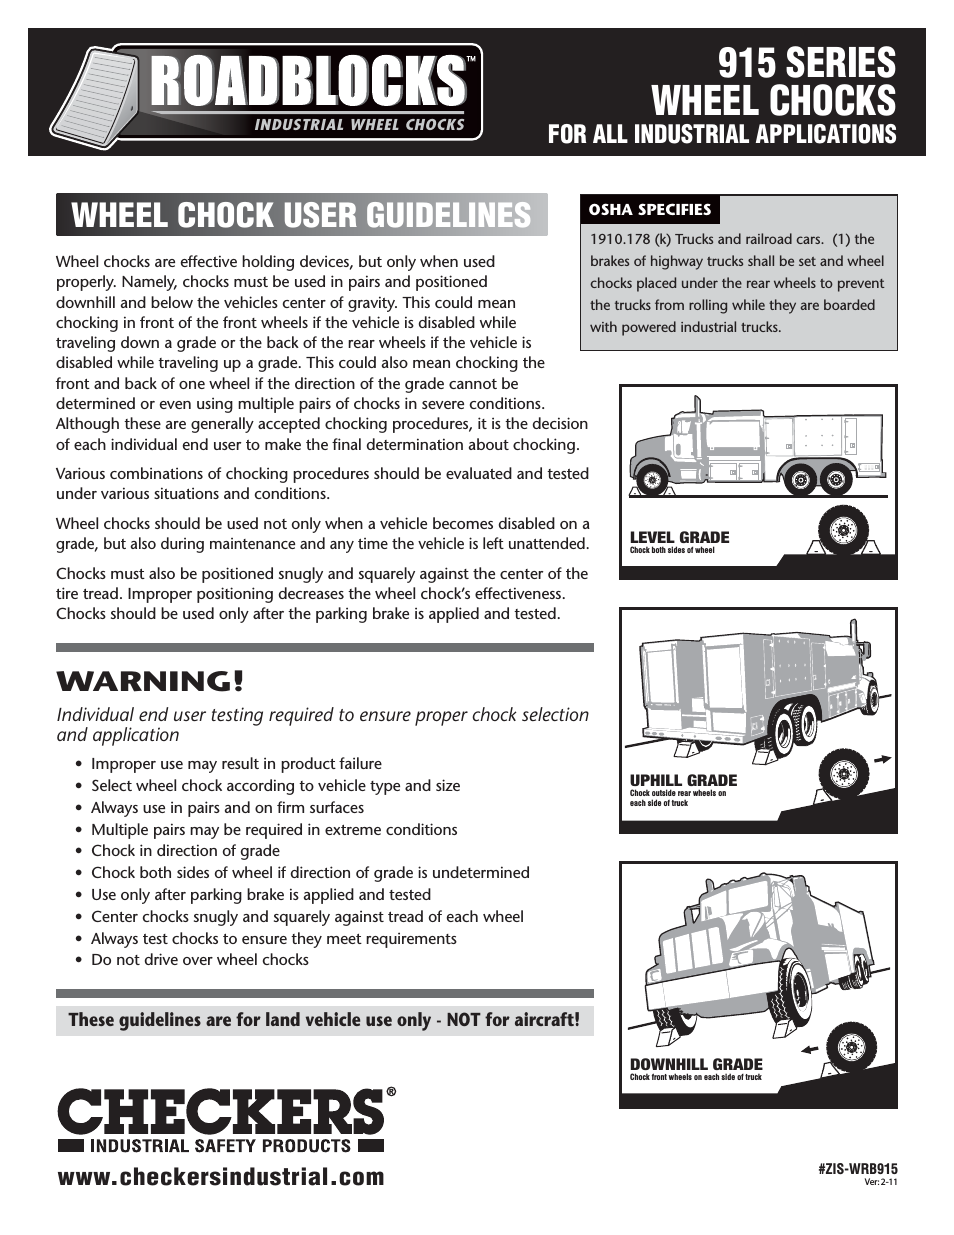 Roadblocks 915 Wheel Chocks User Guidelines